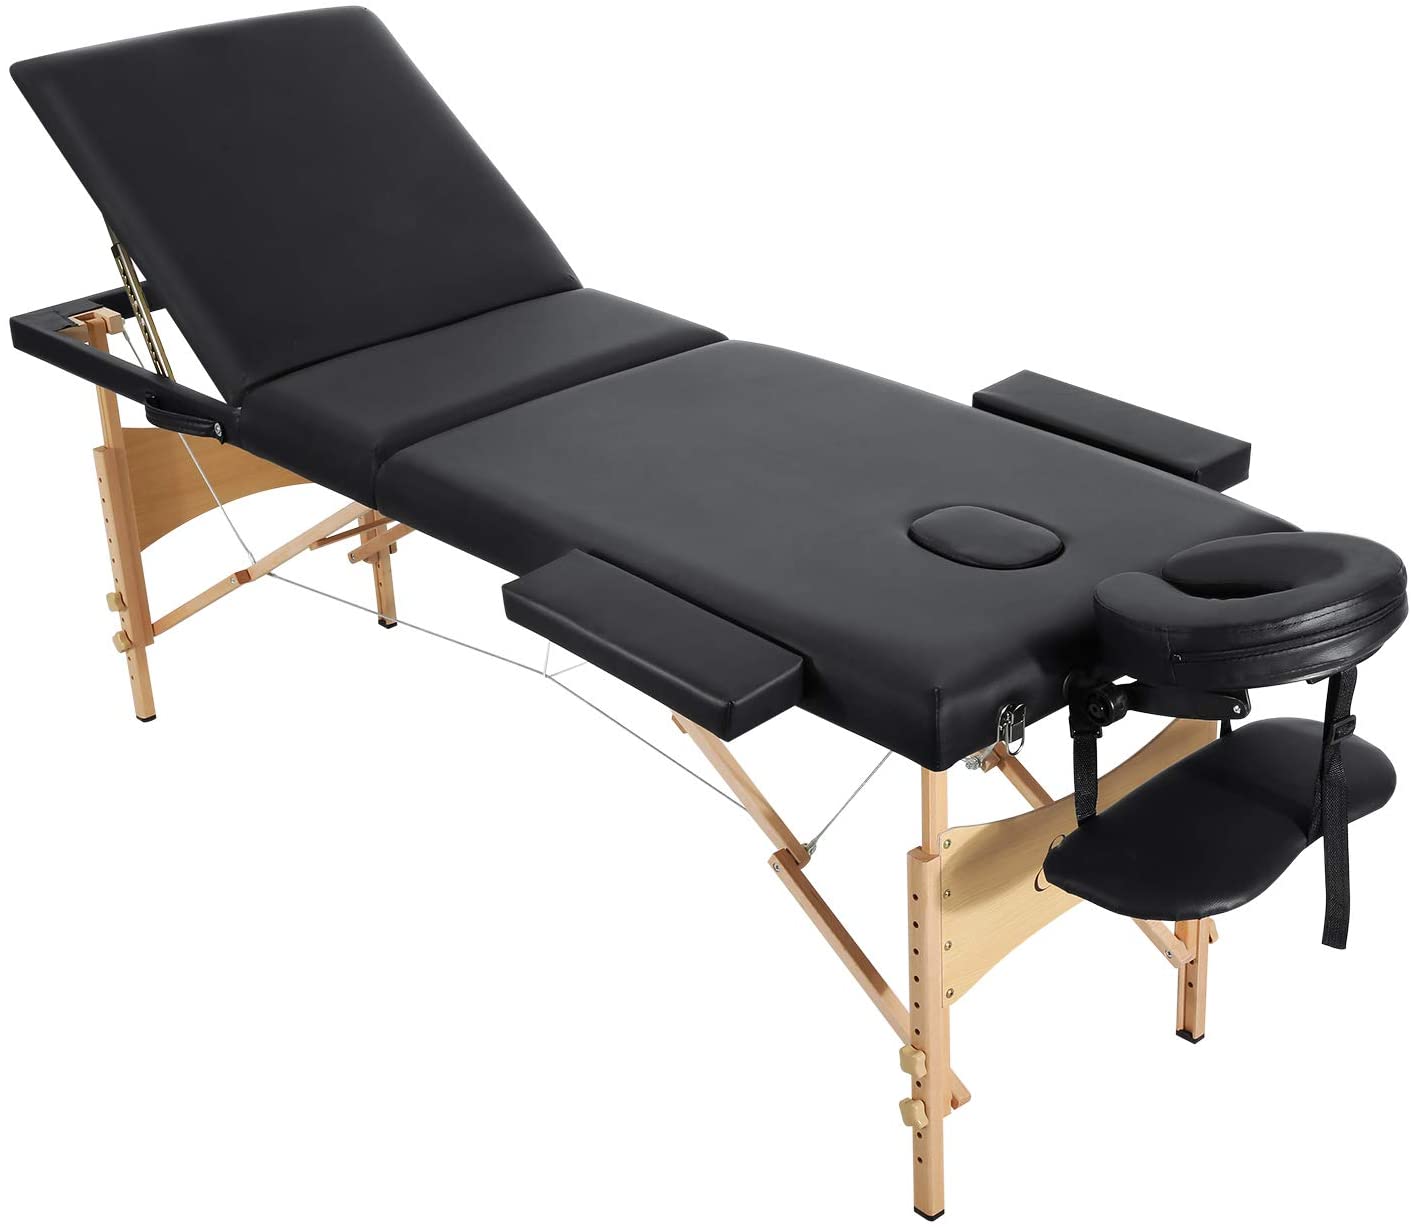 Table de Massage Pro Luxe beaucoup daccessoires lilas pliante Confort